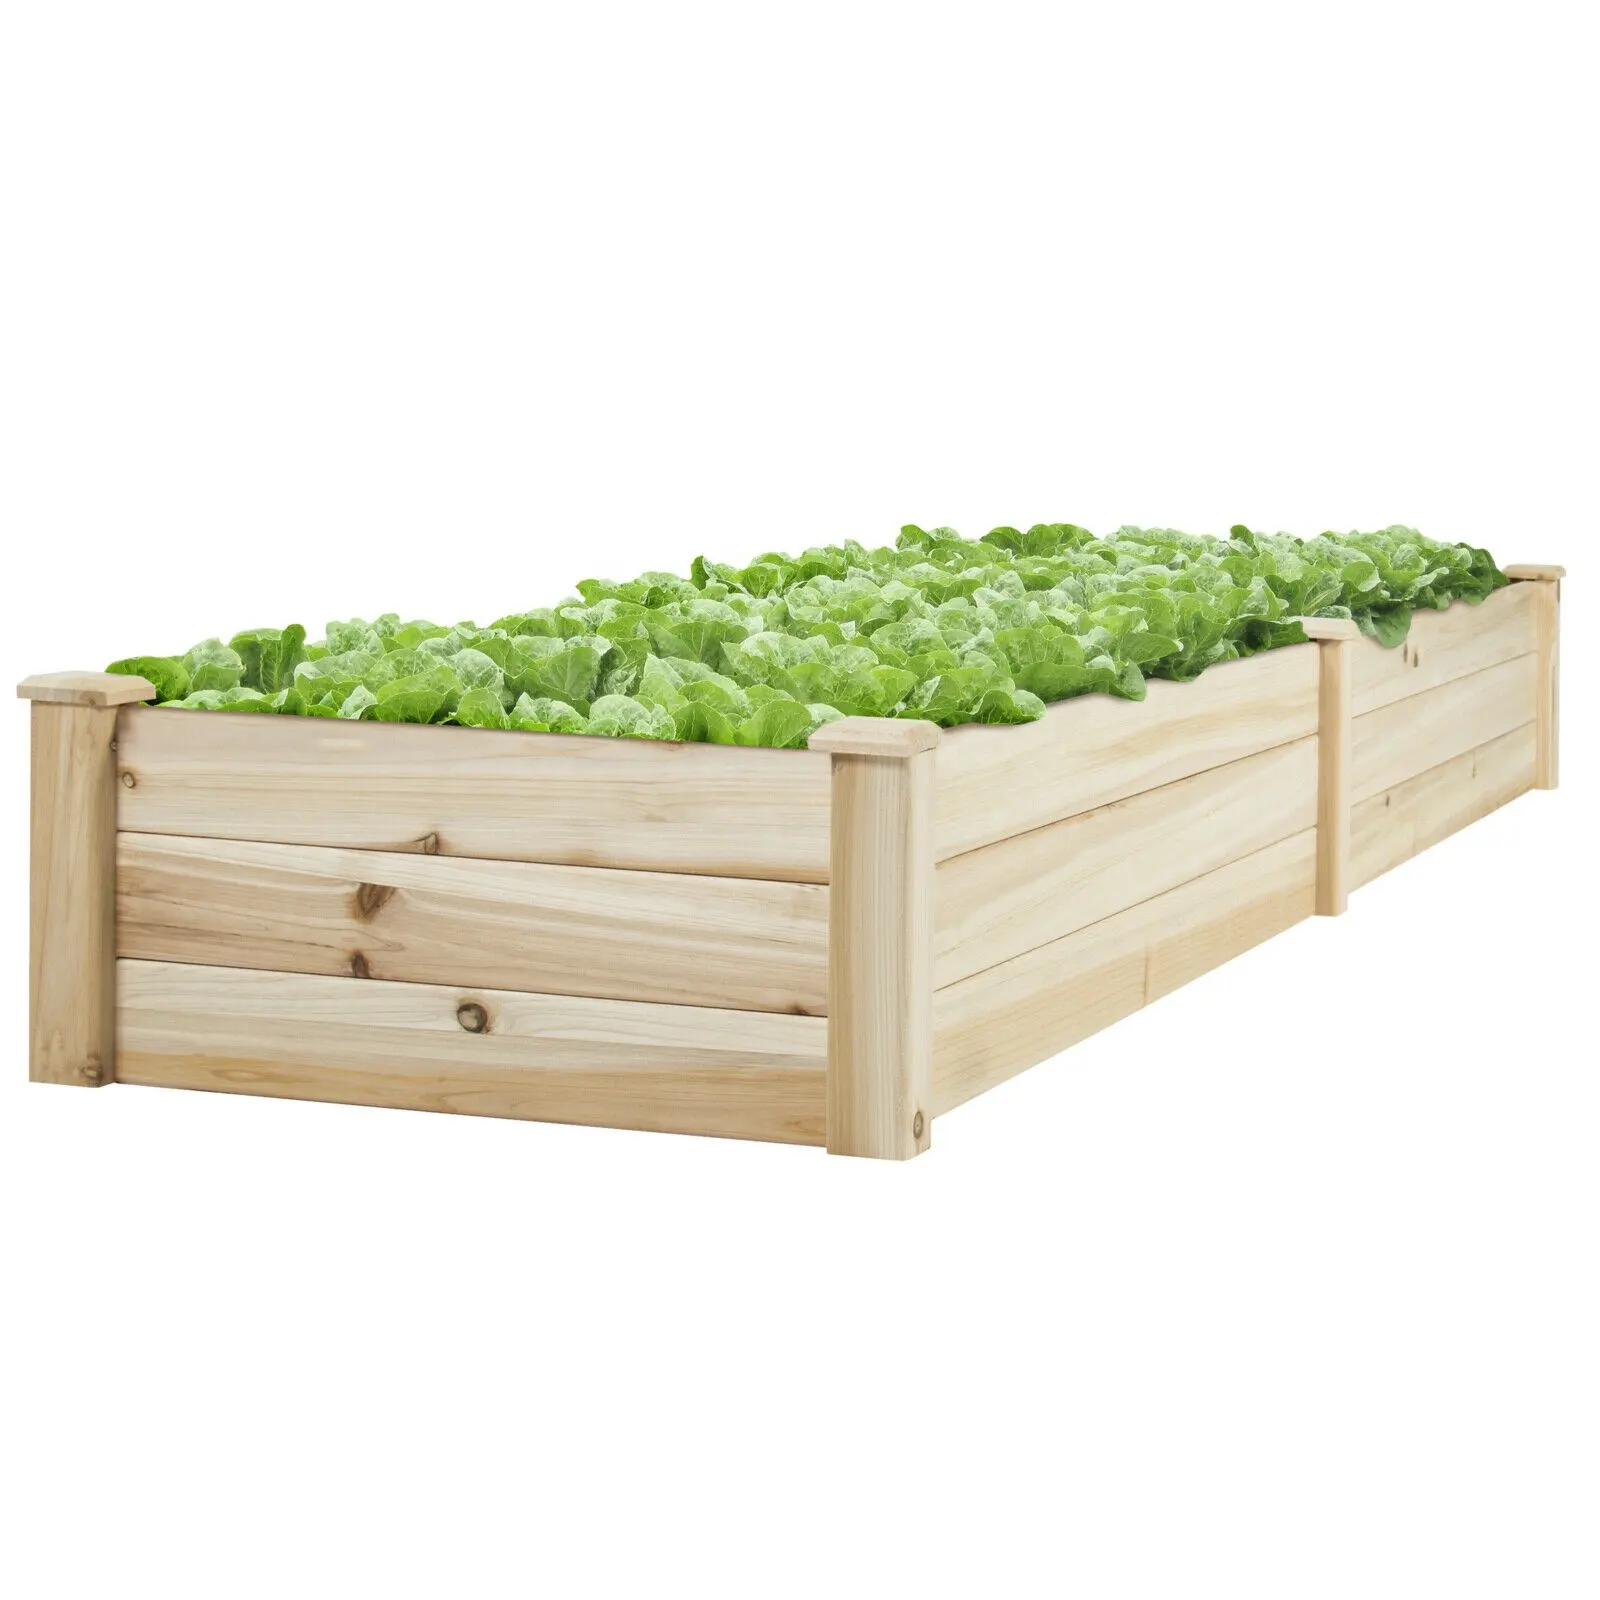 Cama elevada de madeira para jardim, cama à prova de tempo, grande, recipiente para plantas, grão de madeira, cama elevada para jardim, centro de jardim